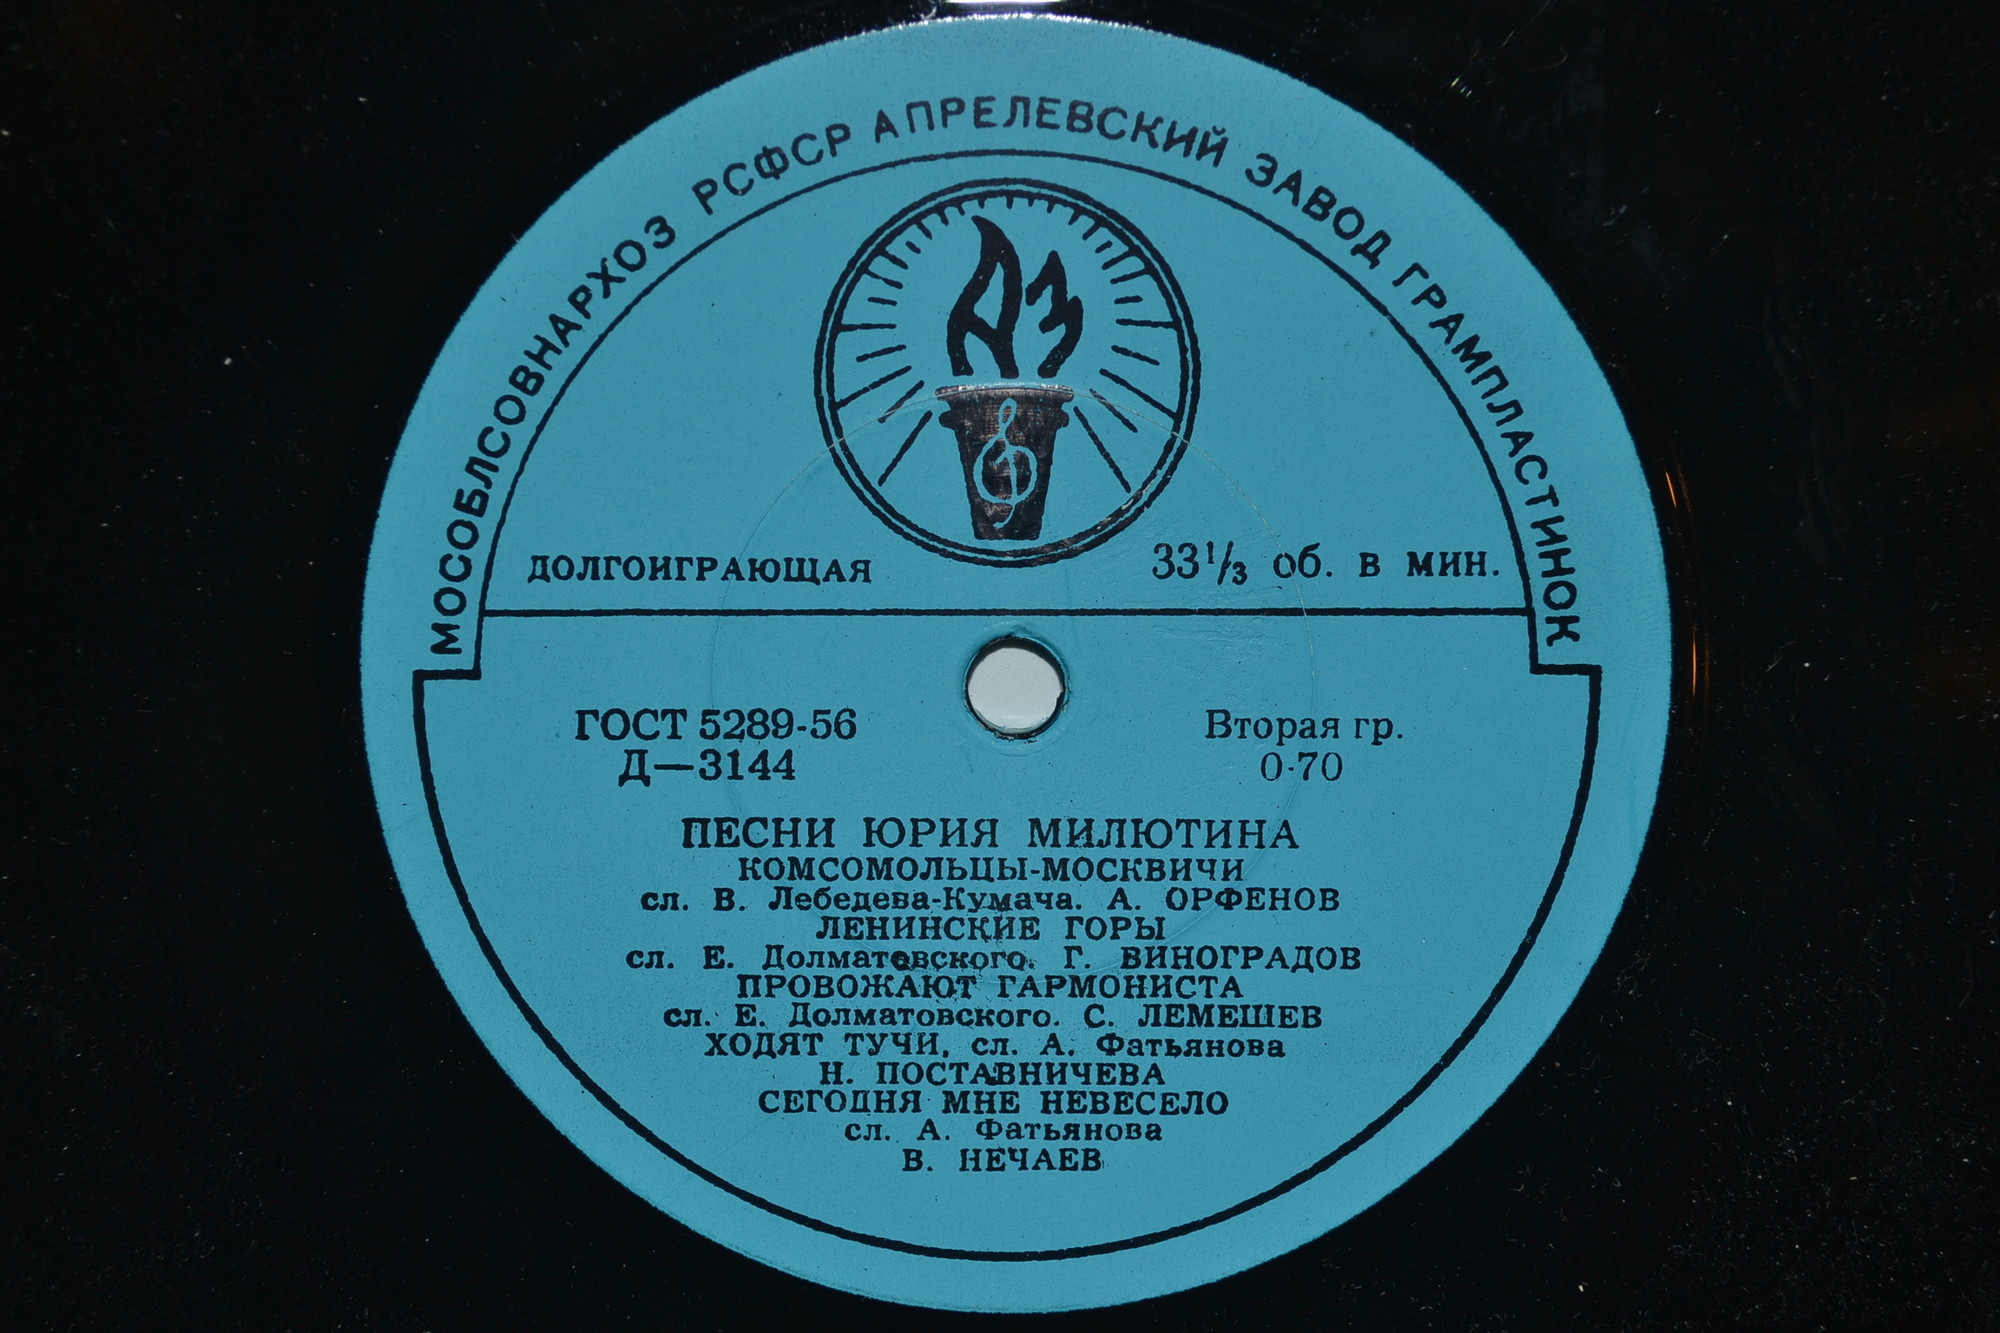 Песни Юрия МИЛЮТИНА (1903-1968)